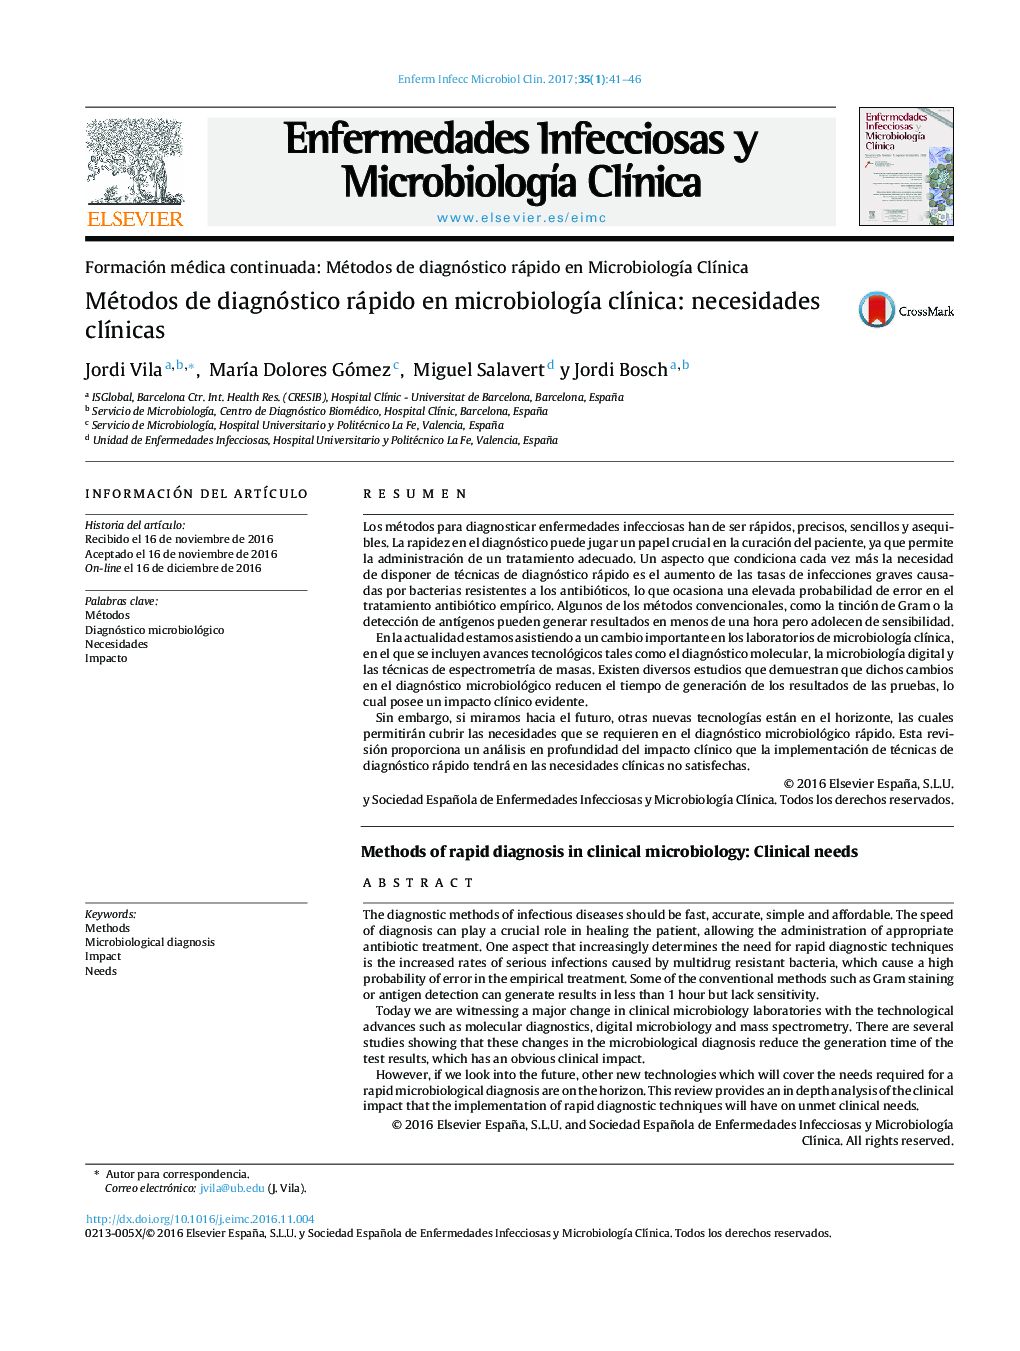 Métodos de diagnóstico rápido en microbiologÃ­a clÃ­nica: necesidades clÃ­nicas